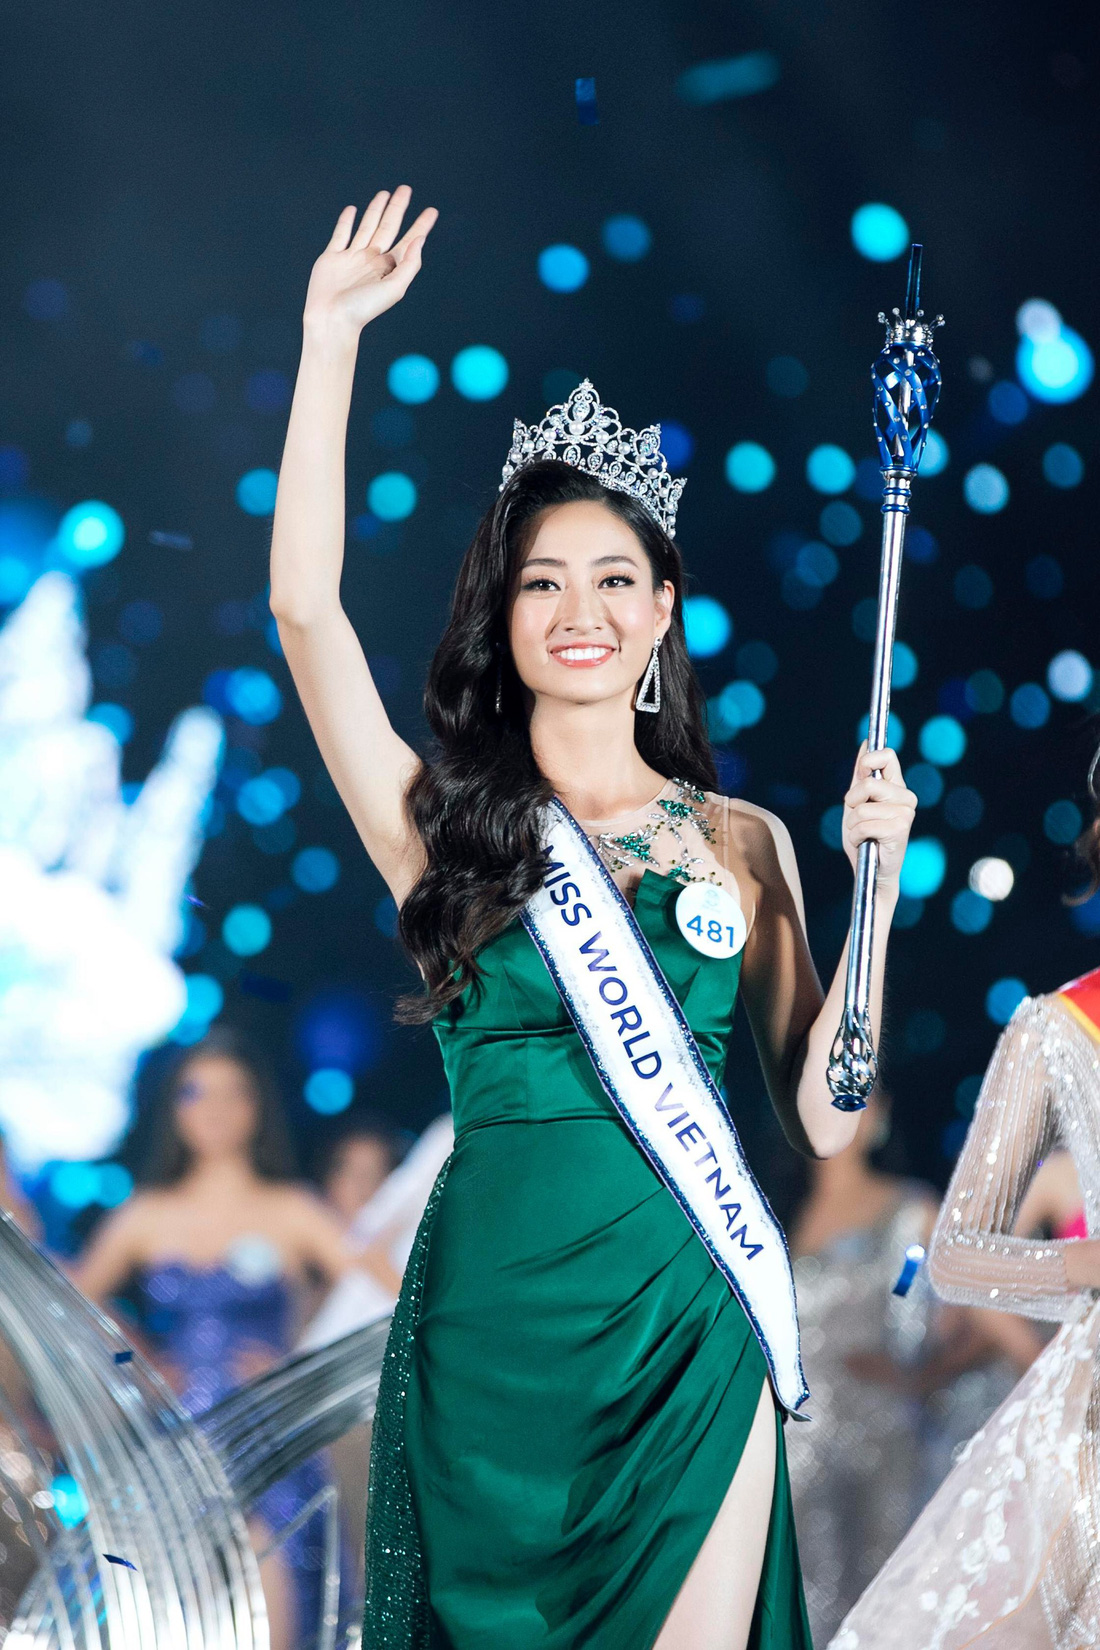 Ngắm bộ ảnh của tân Hoa hậu Thế giới Việt Nam 2019 Lương Thùy Linh - Ảnh 3.